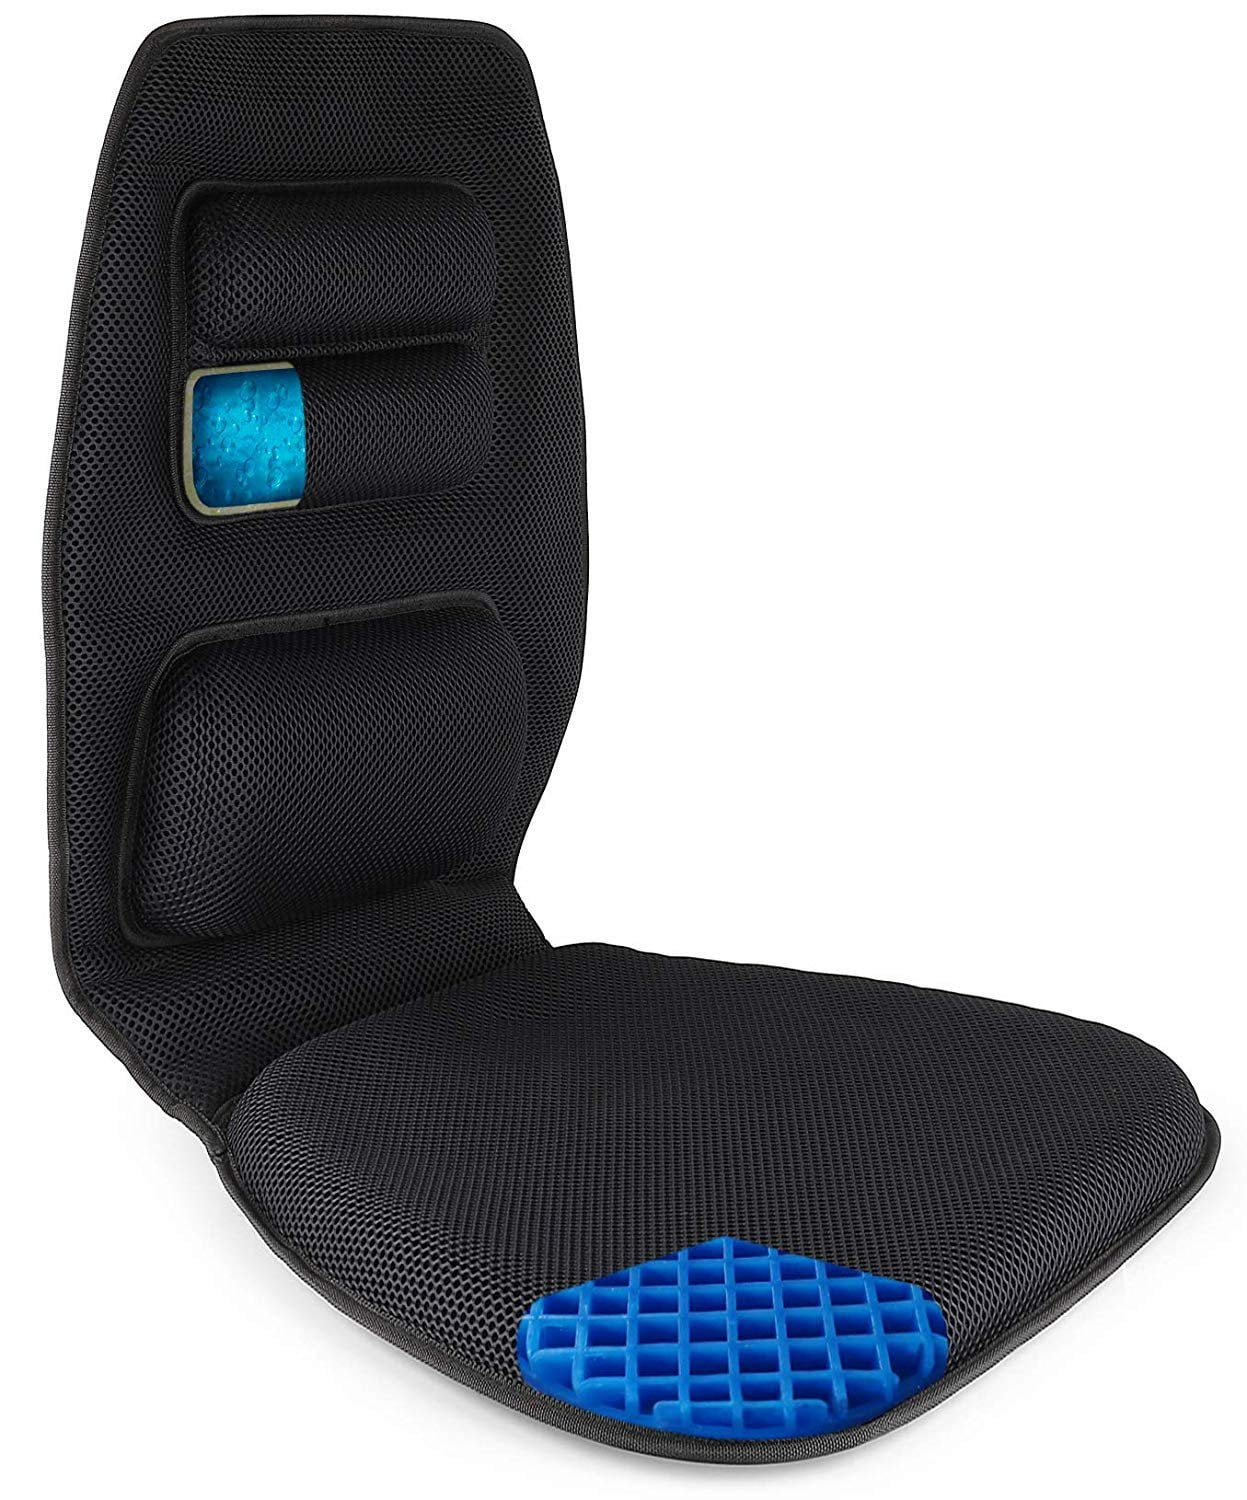 Niceeday Cooling Gel Lumbar Support Pillow for Office Chair 3D Updated  Memory Foam Car Lumbar Pillow for Back Support Cooling Back Pillow for  Chairs